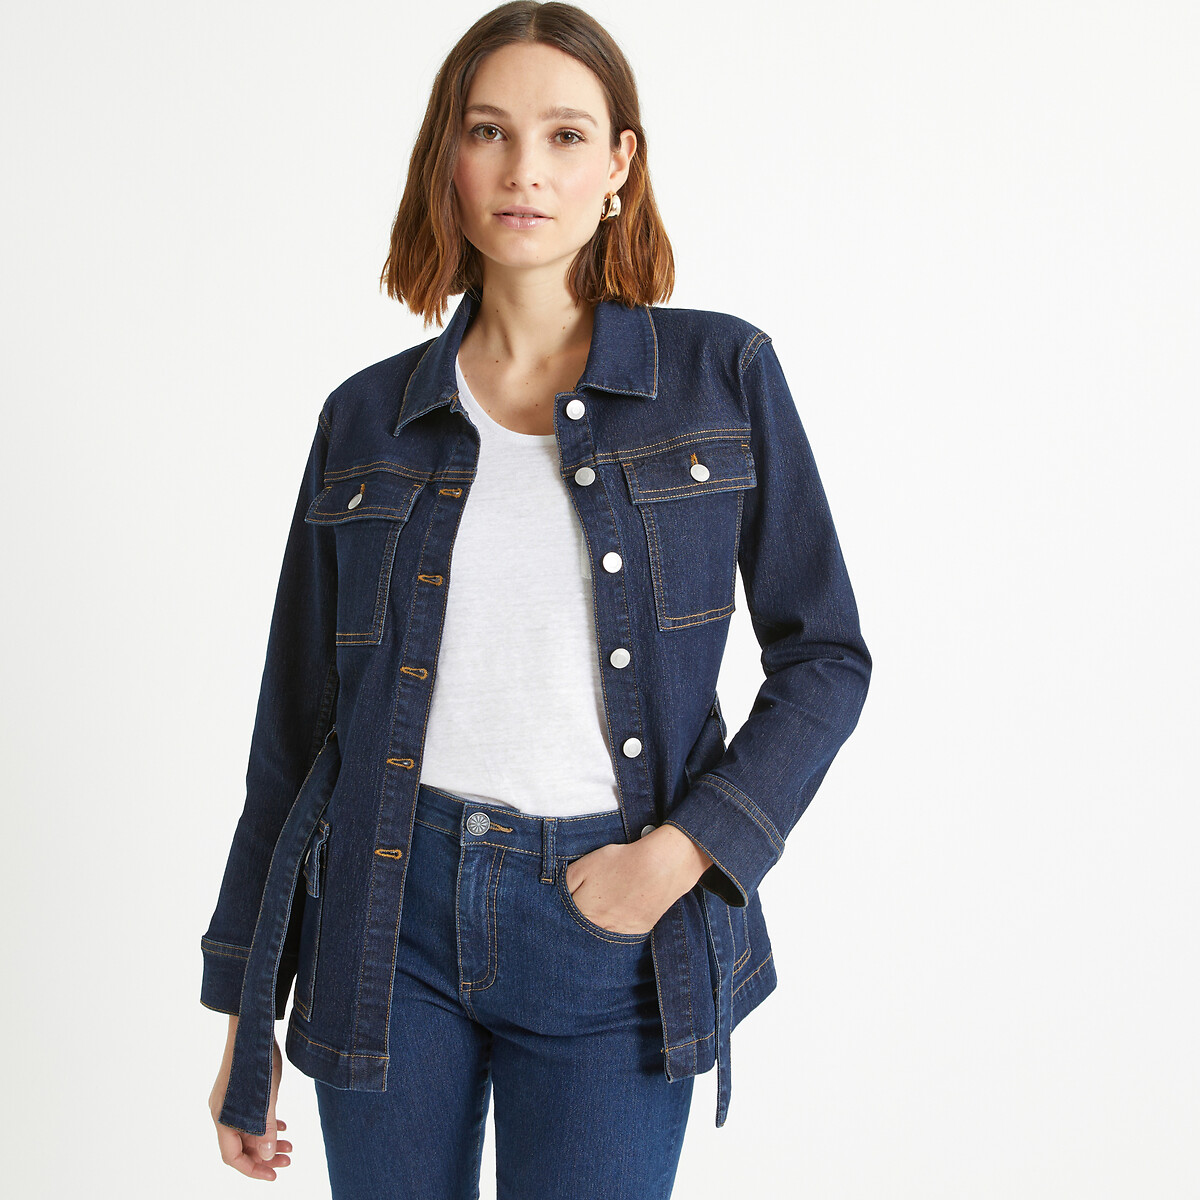 Жакет из джинсовой ткани прямого покроя 48 (FR) - 54 (RUS) синий куртка короткая прямого покроя из джинсовой ткани l синий